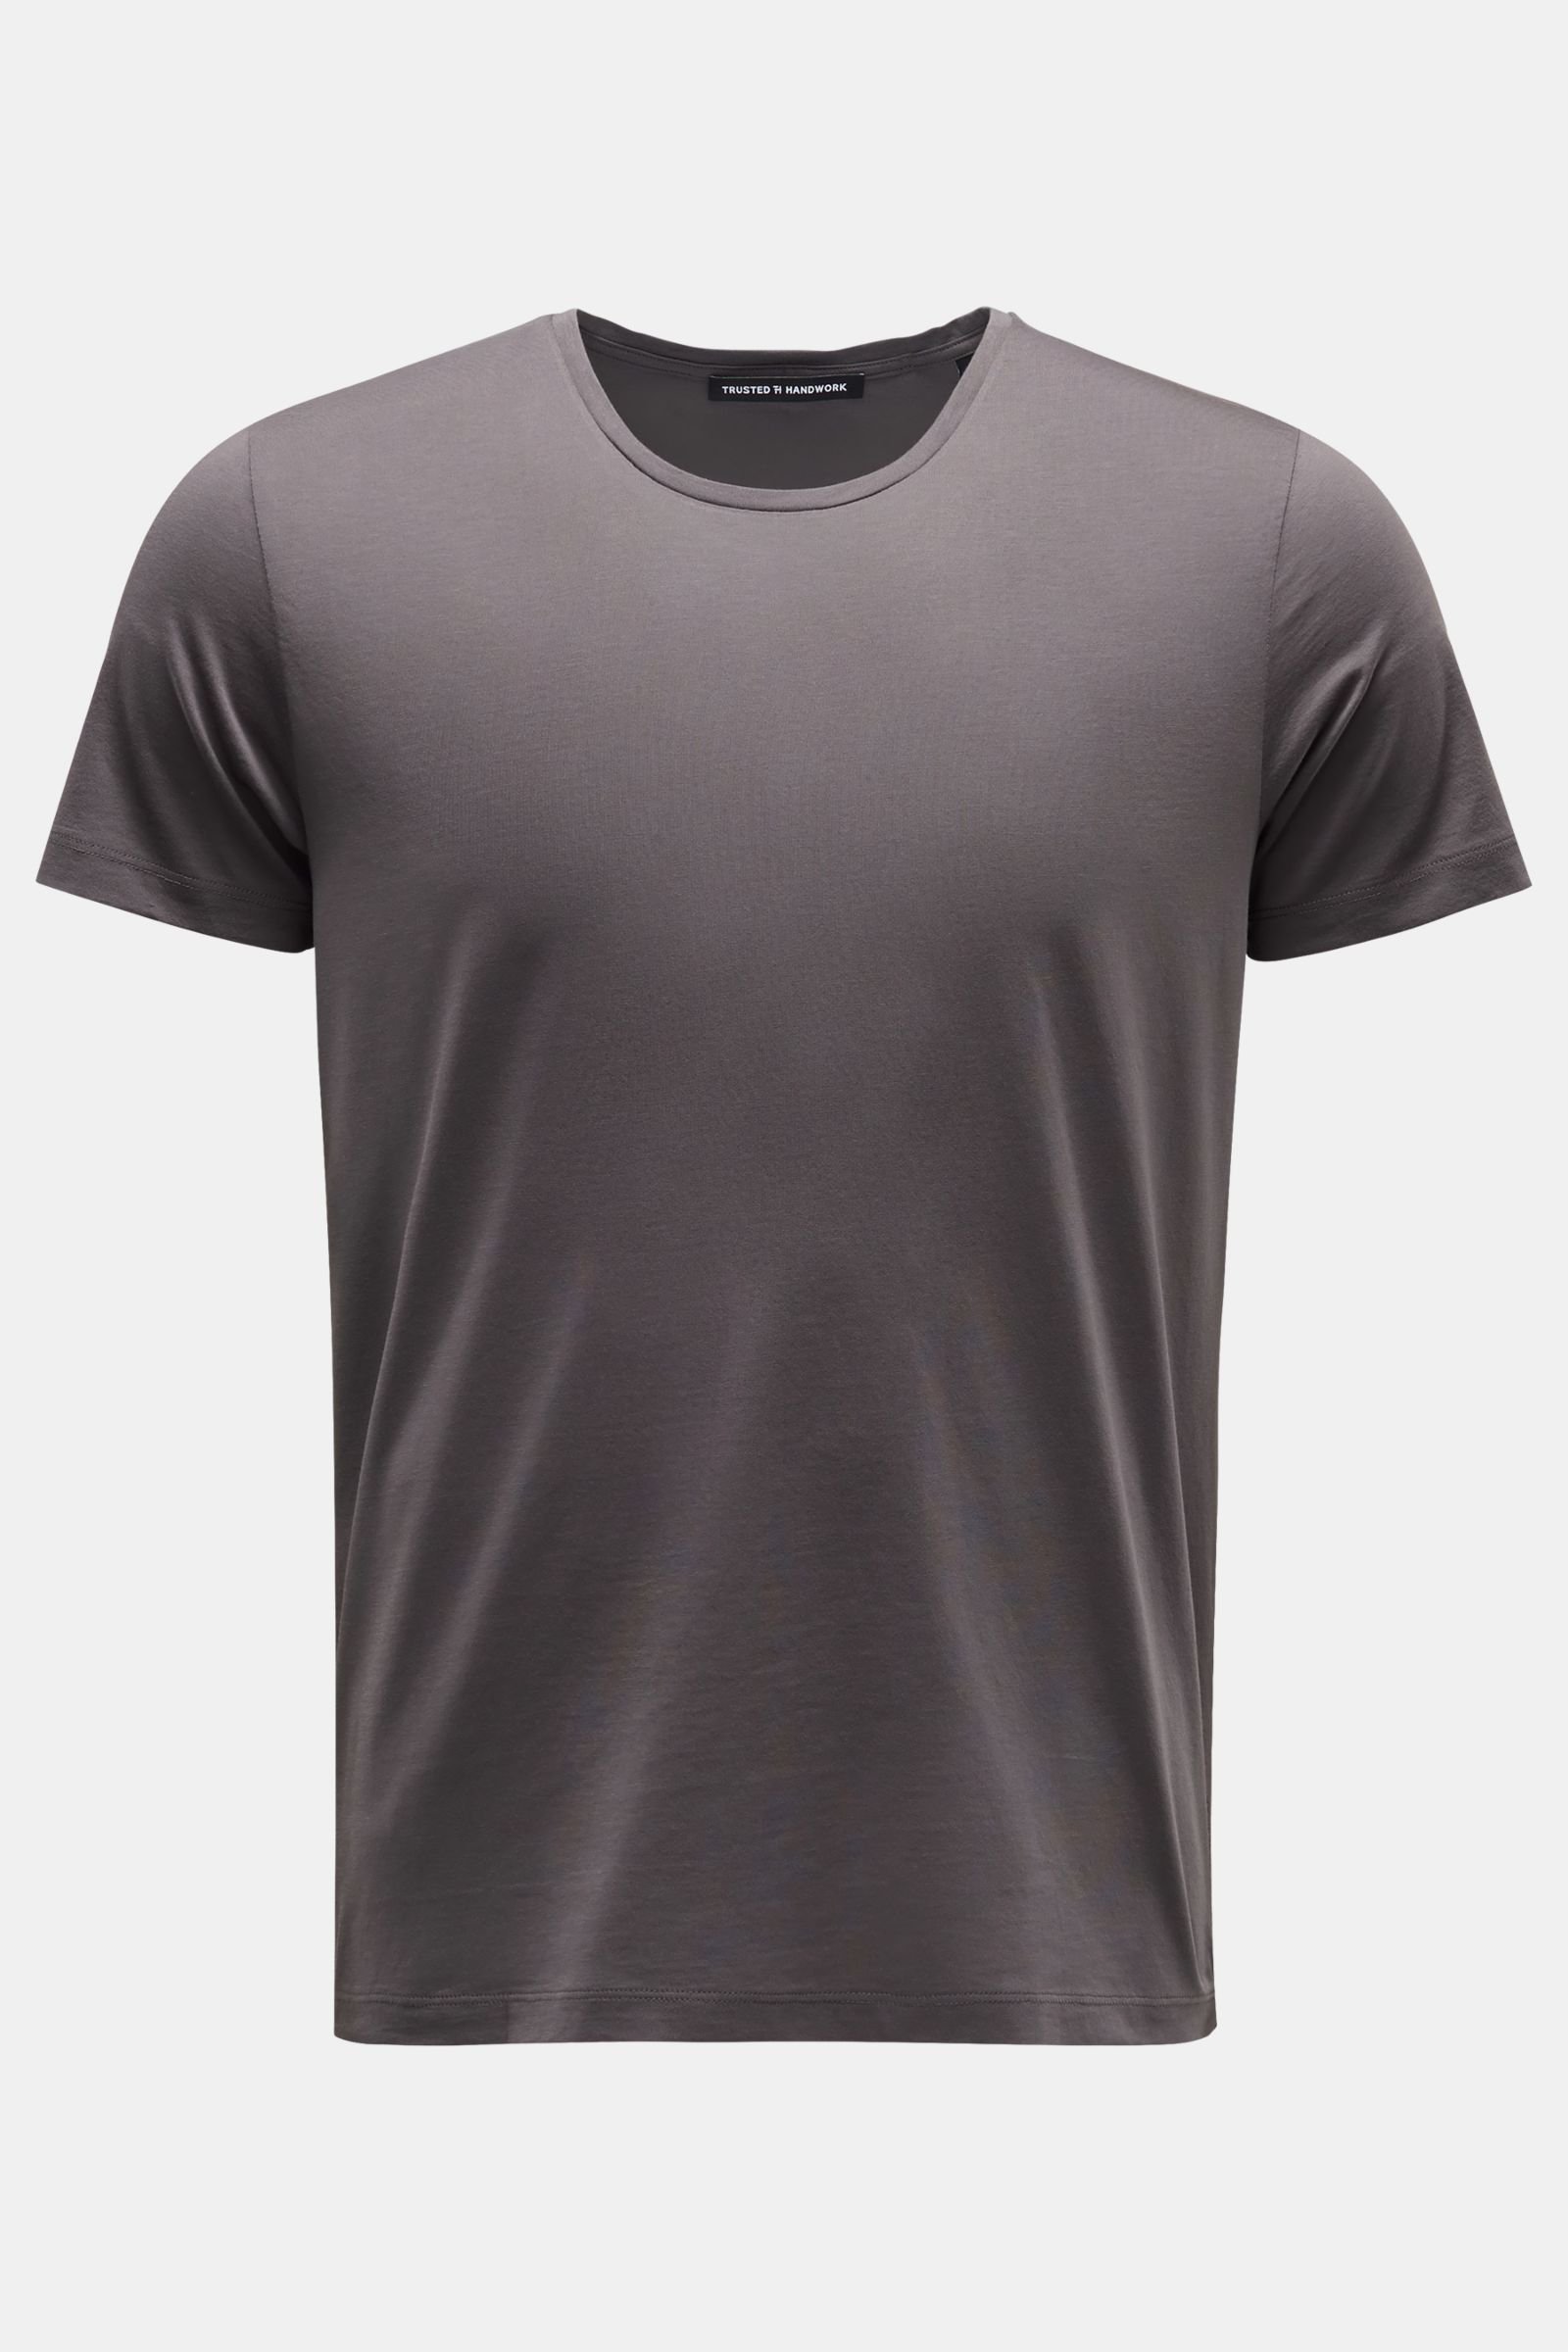 Crew neck T-shirt 'Washington' dark grey